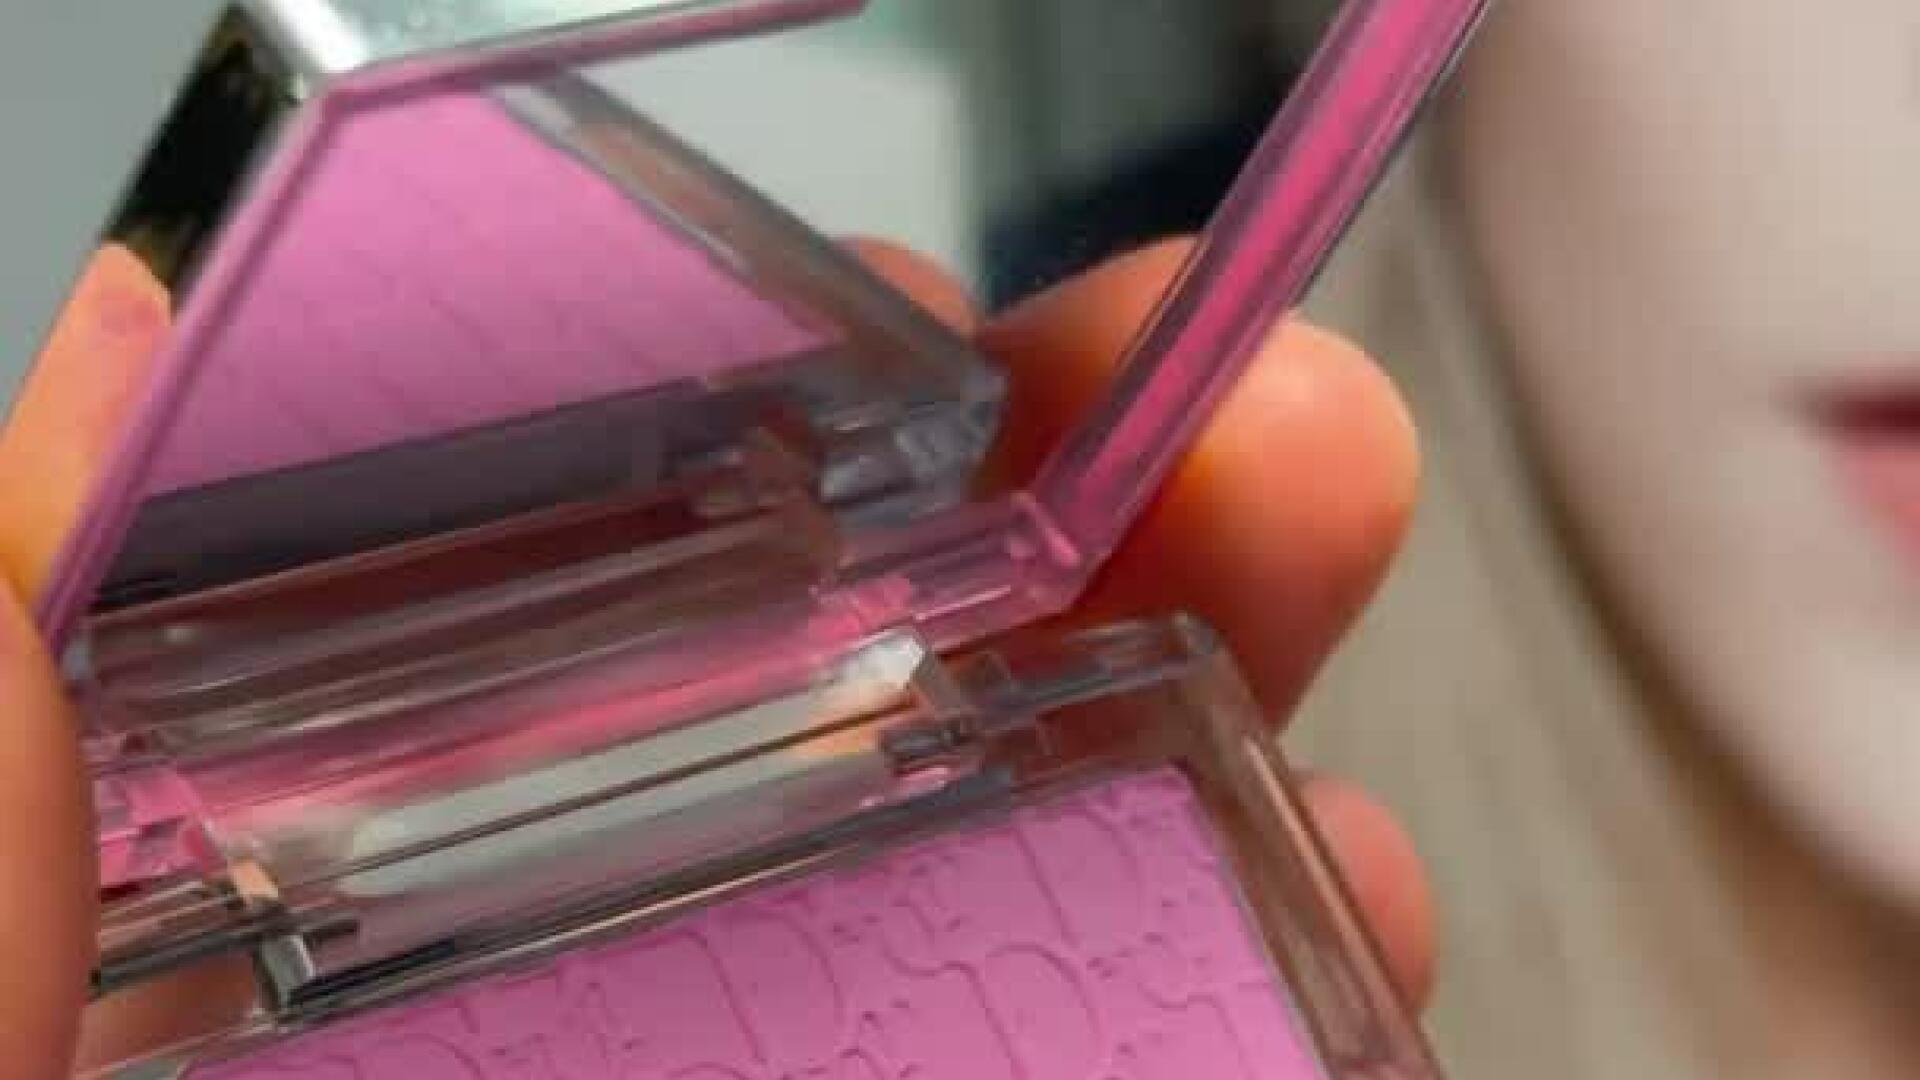 DIOR BACKSTAGE EYE PALETTE  Amber Neutral Swatches Rosy Glow Blush 001  Light Pink  Survivorpeach